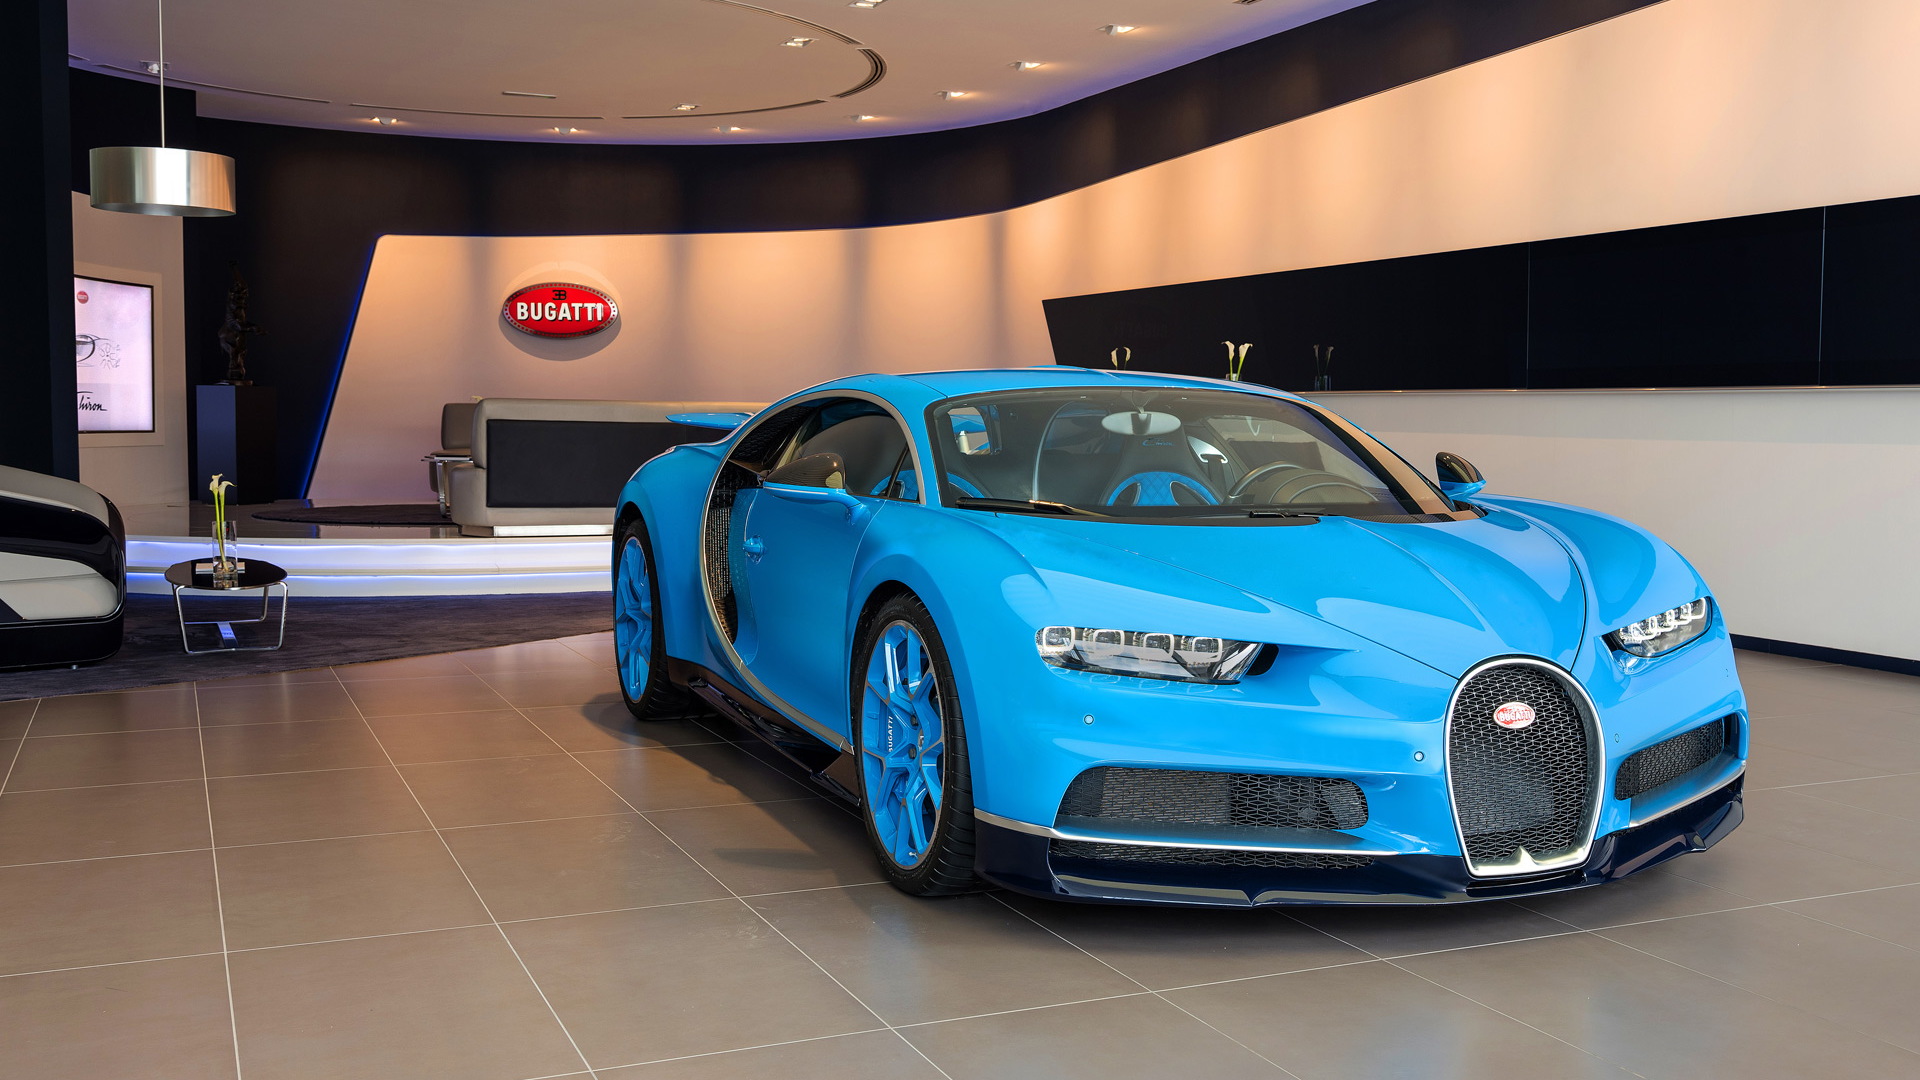 Bugatti showroom in Dubai